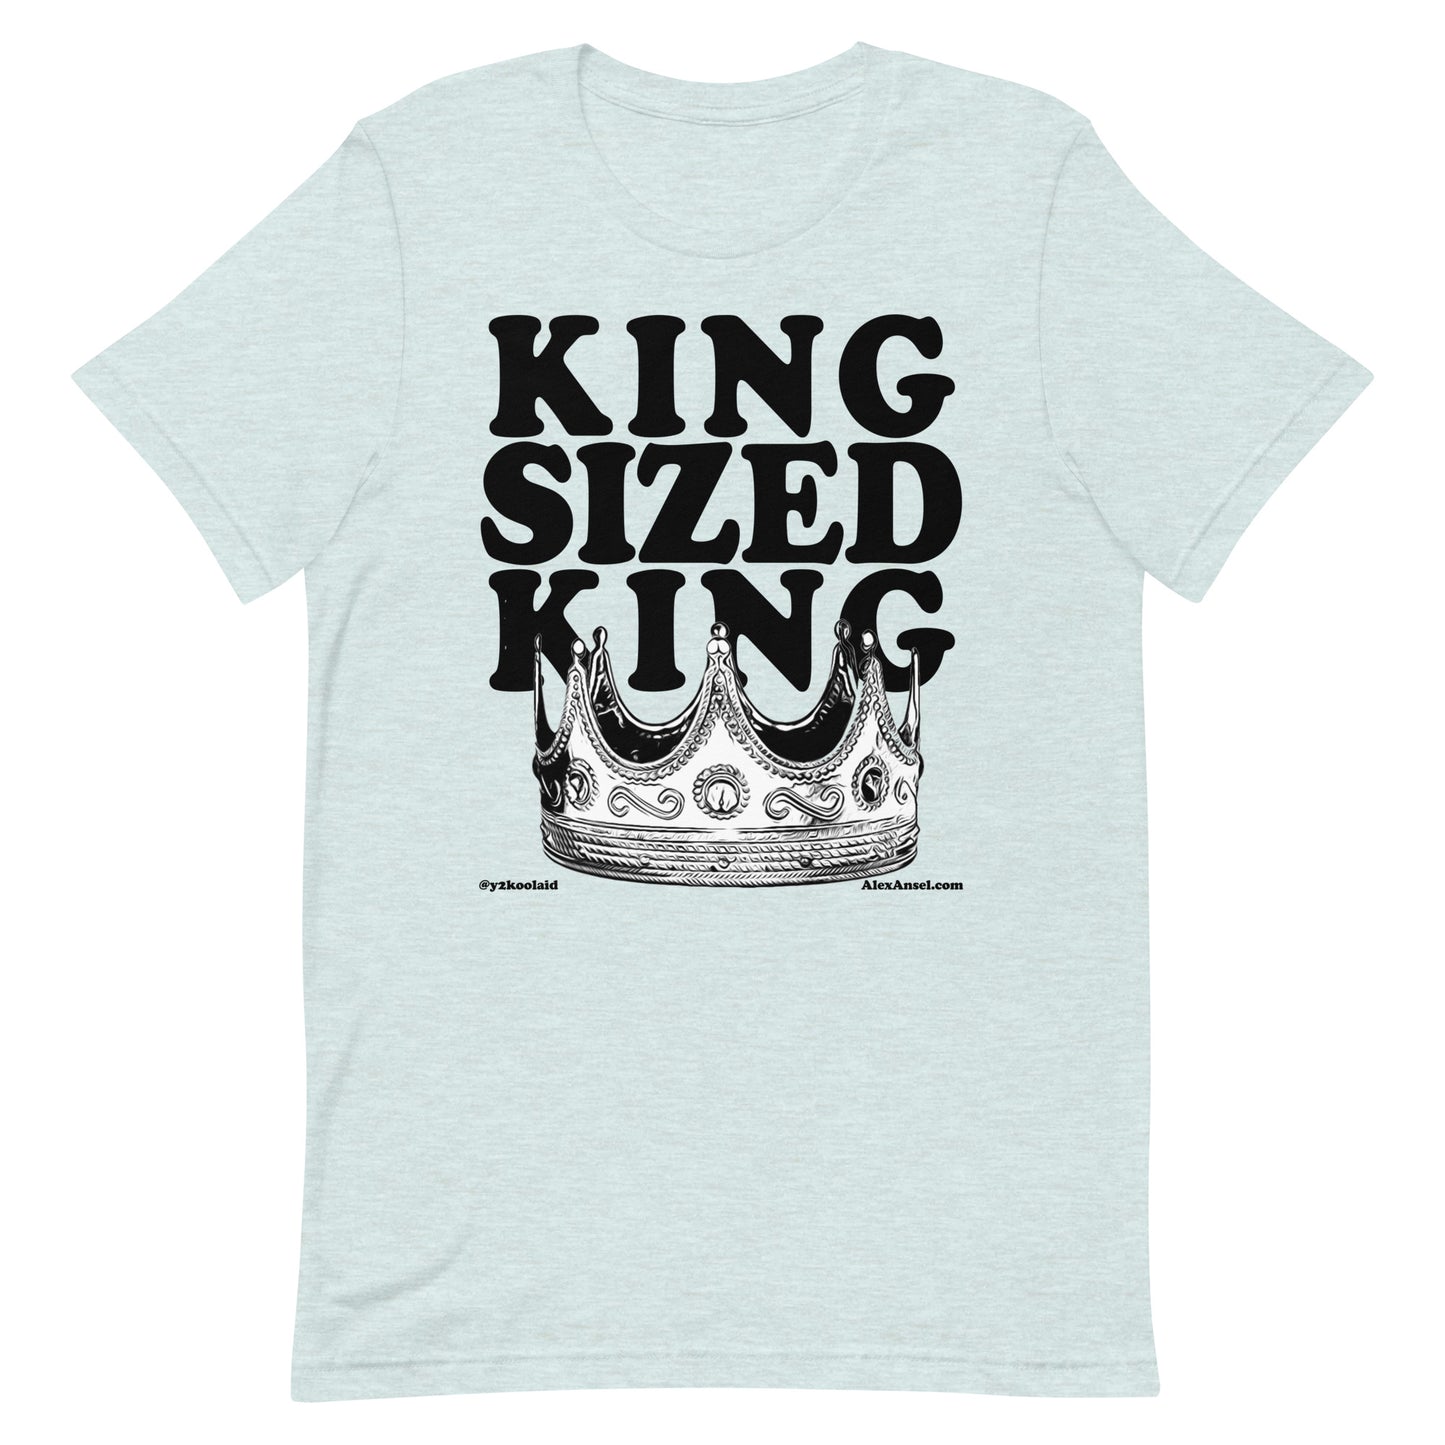 KING SIZED KING (b)